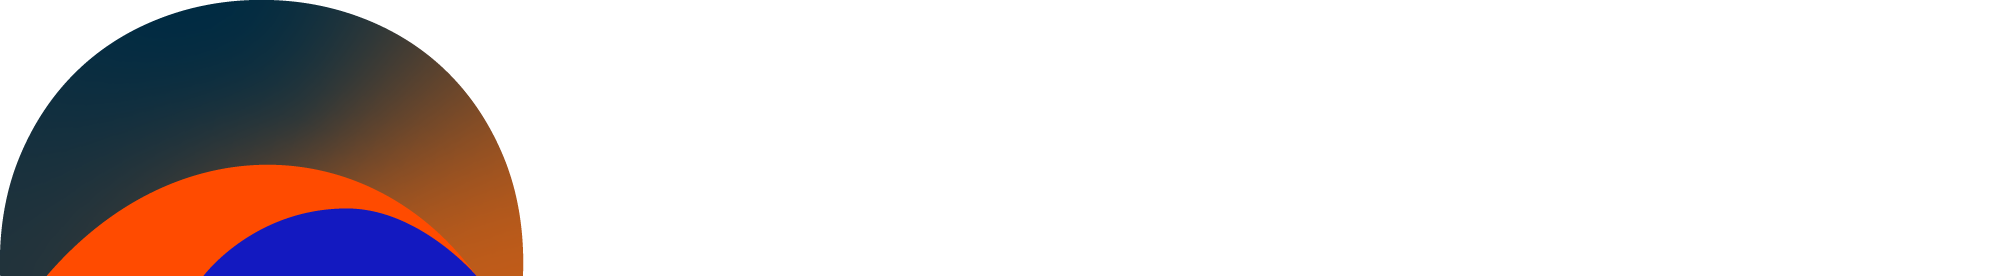 HorizonIQ Store